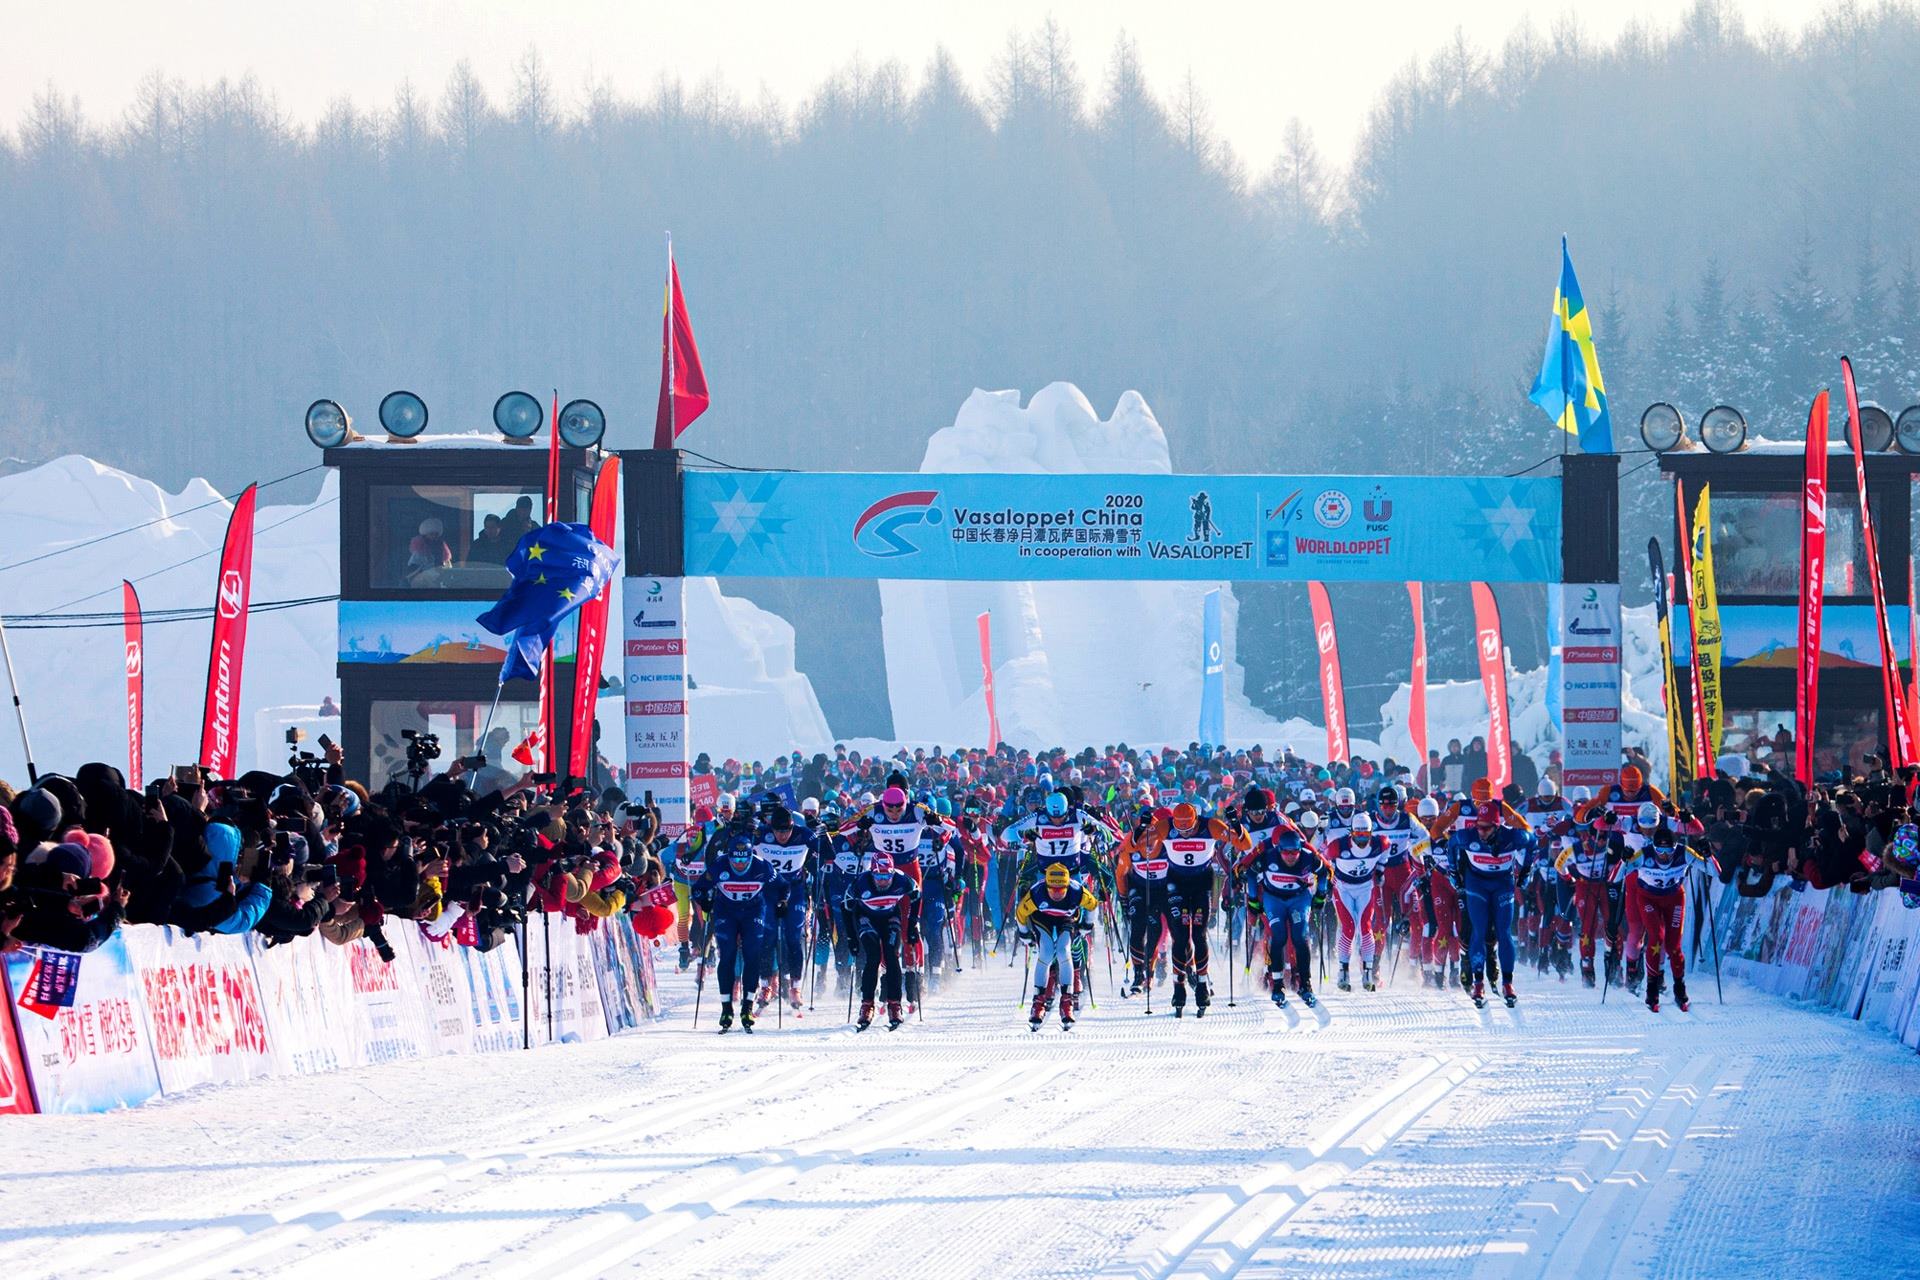 8-facts-about-vasaloppet-ski-race